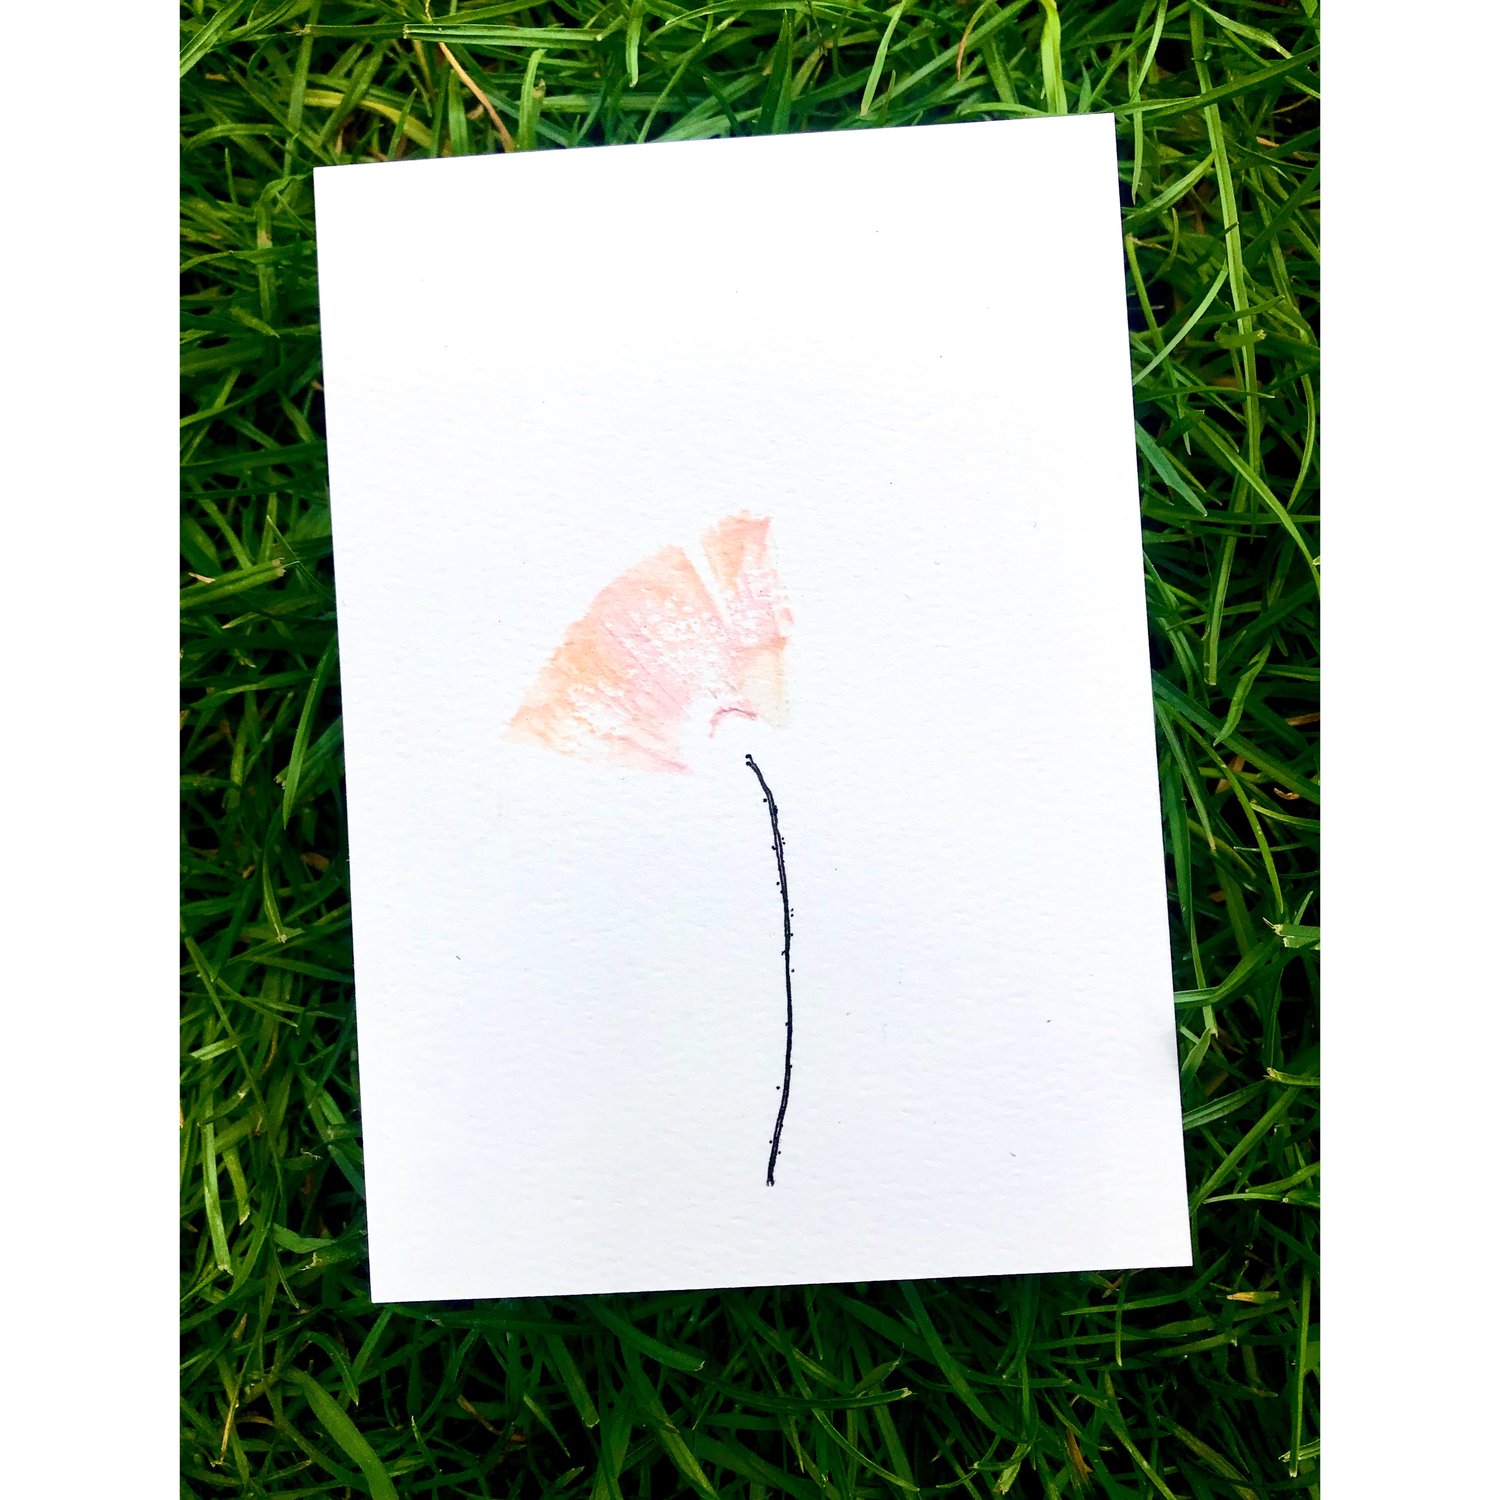 Poppy - The one - 10,4x14,7 cm, acrylic on premium aquarelle paper